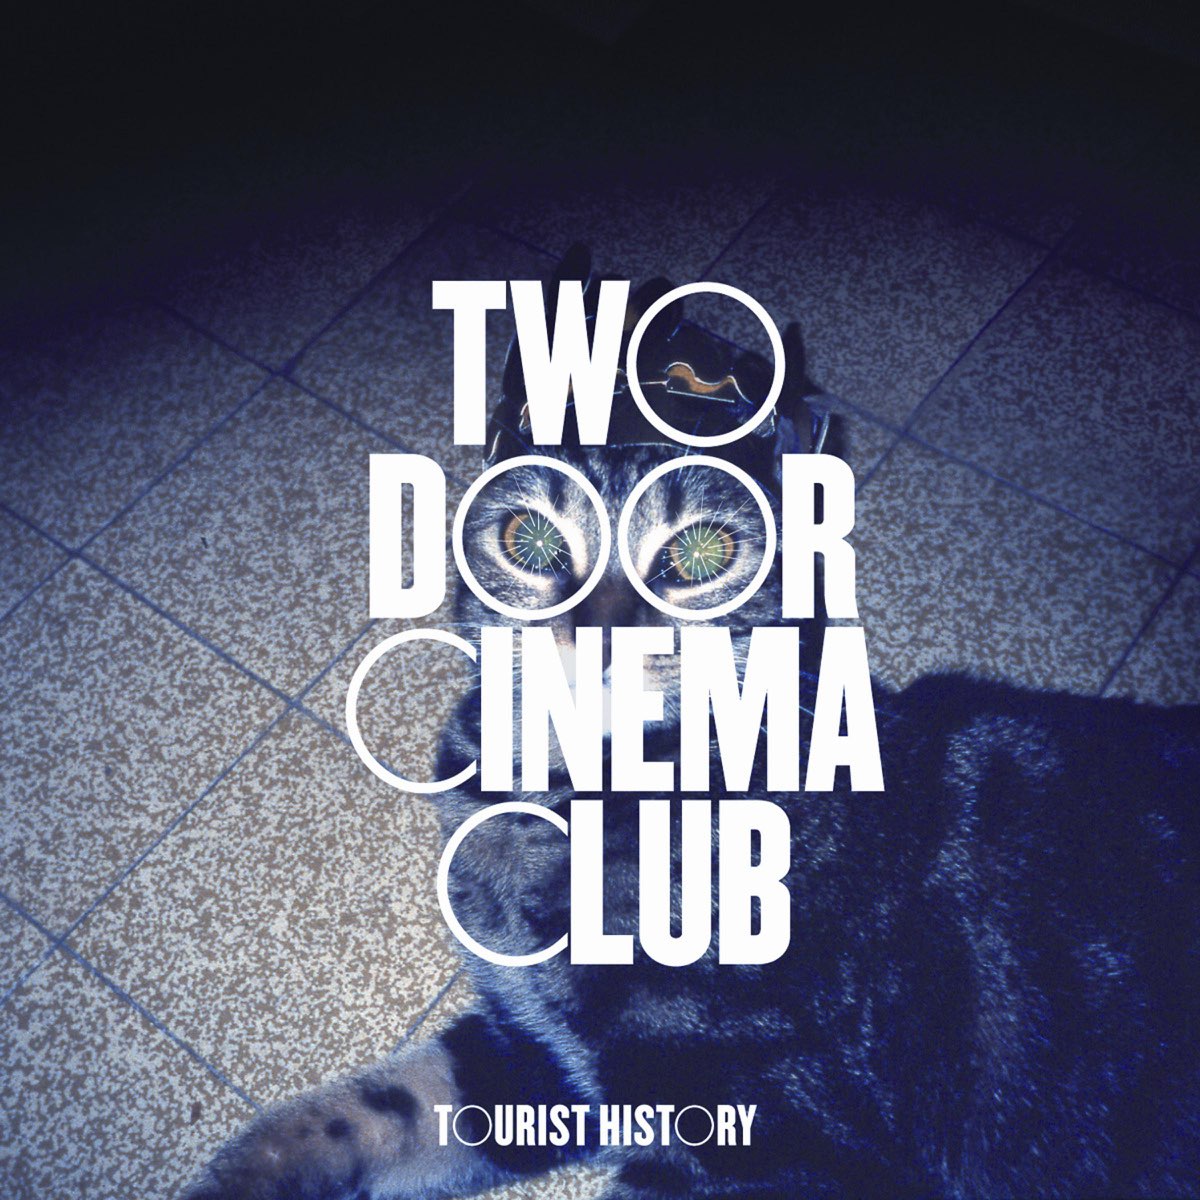 two door cinema club tourist